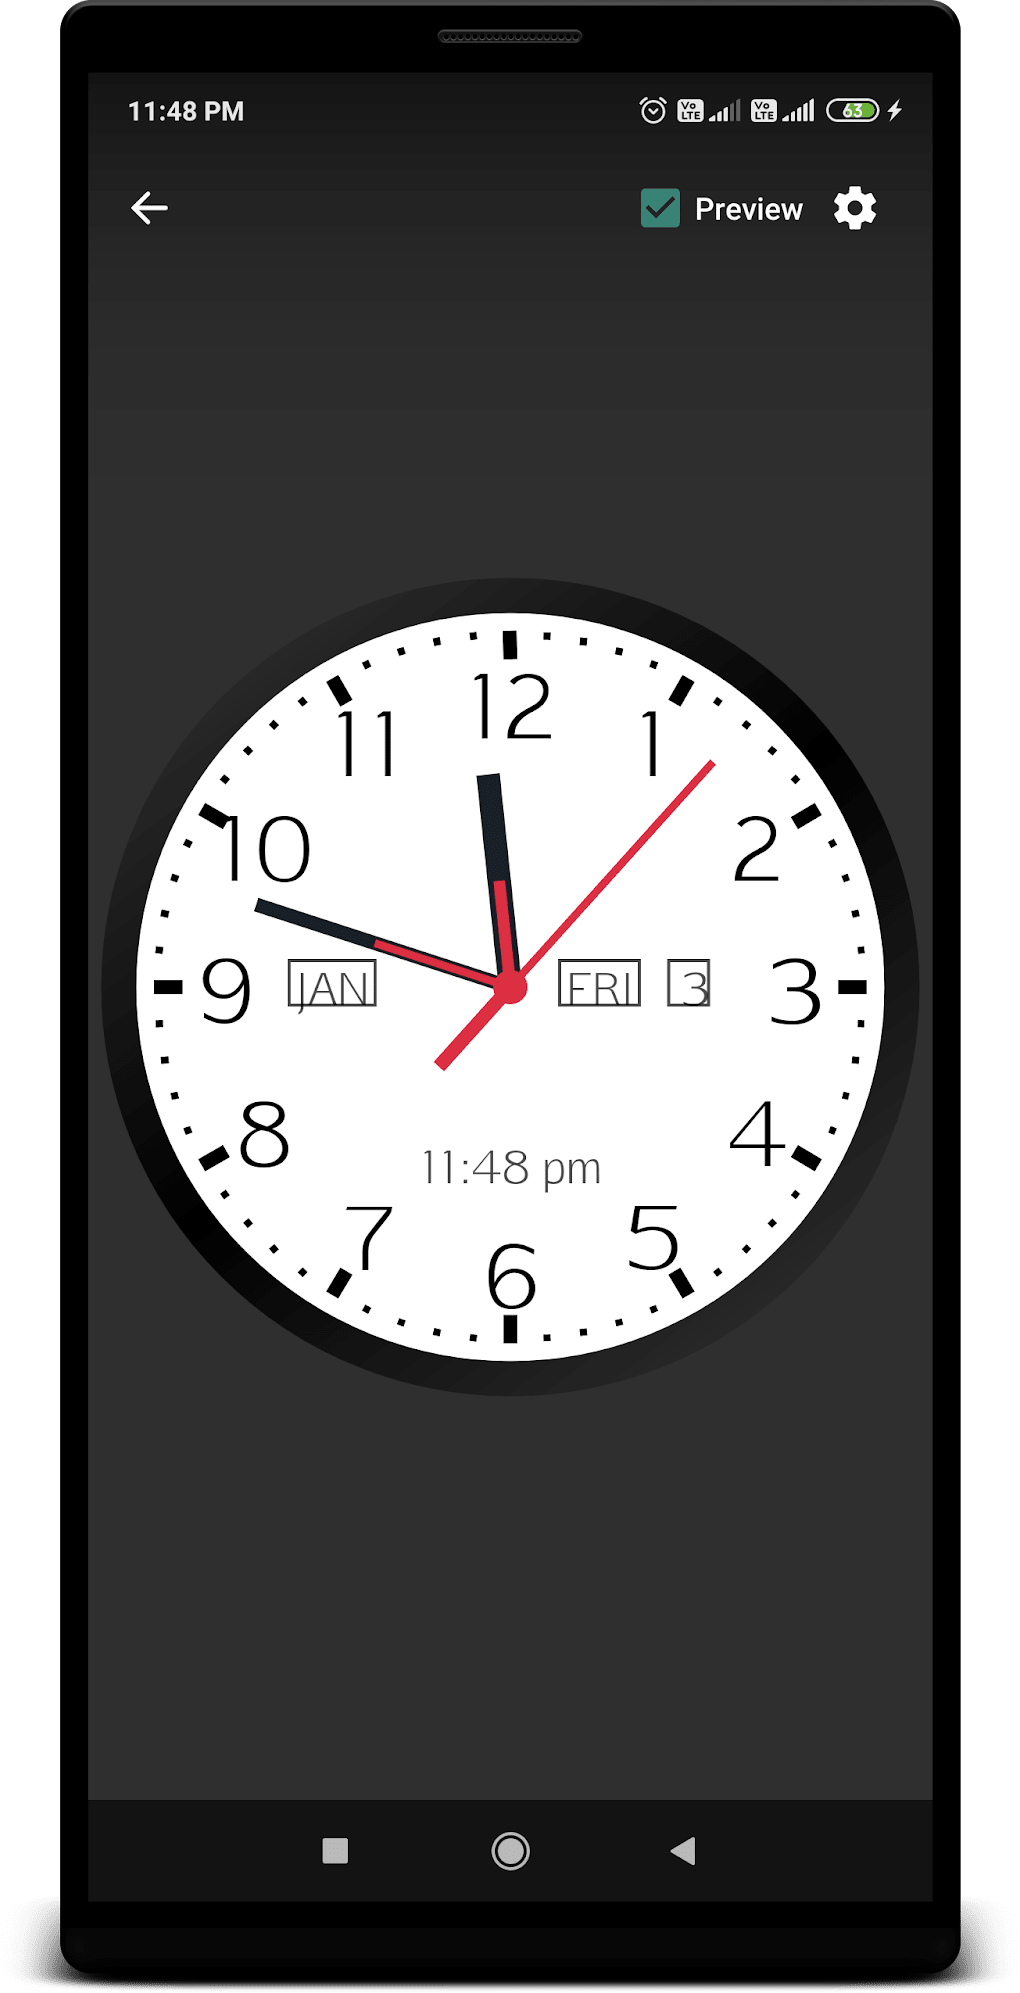 Аналоговые часы для андроид 4.2.2. Аналоговые часы для андроид. Аналоговые часы на экран. Вертикальные часы для андроид. Аналоговые часы на андроид на экран